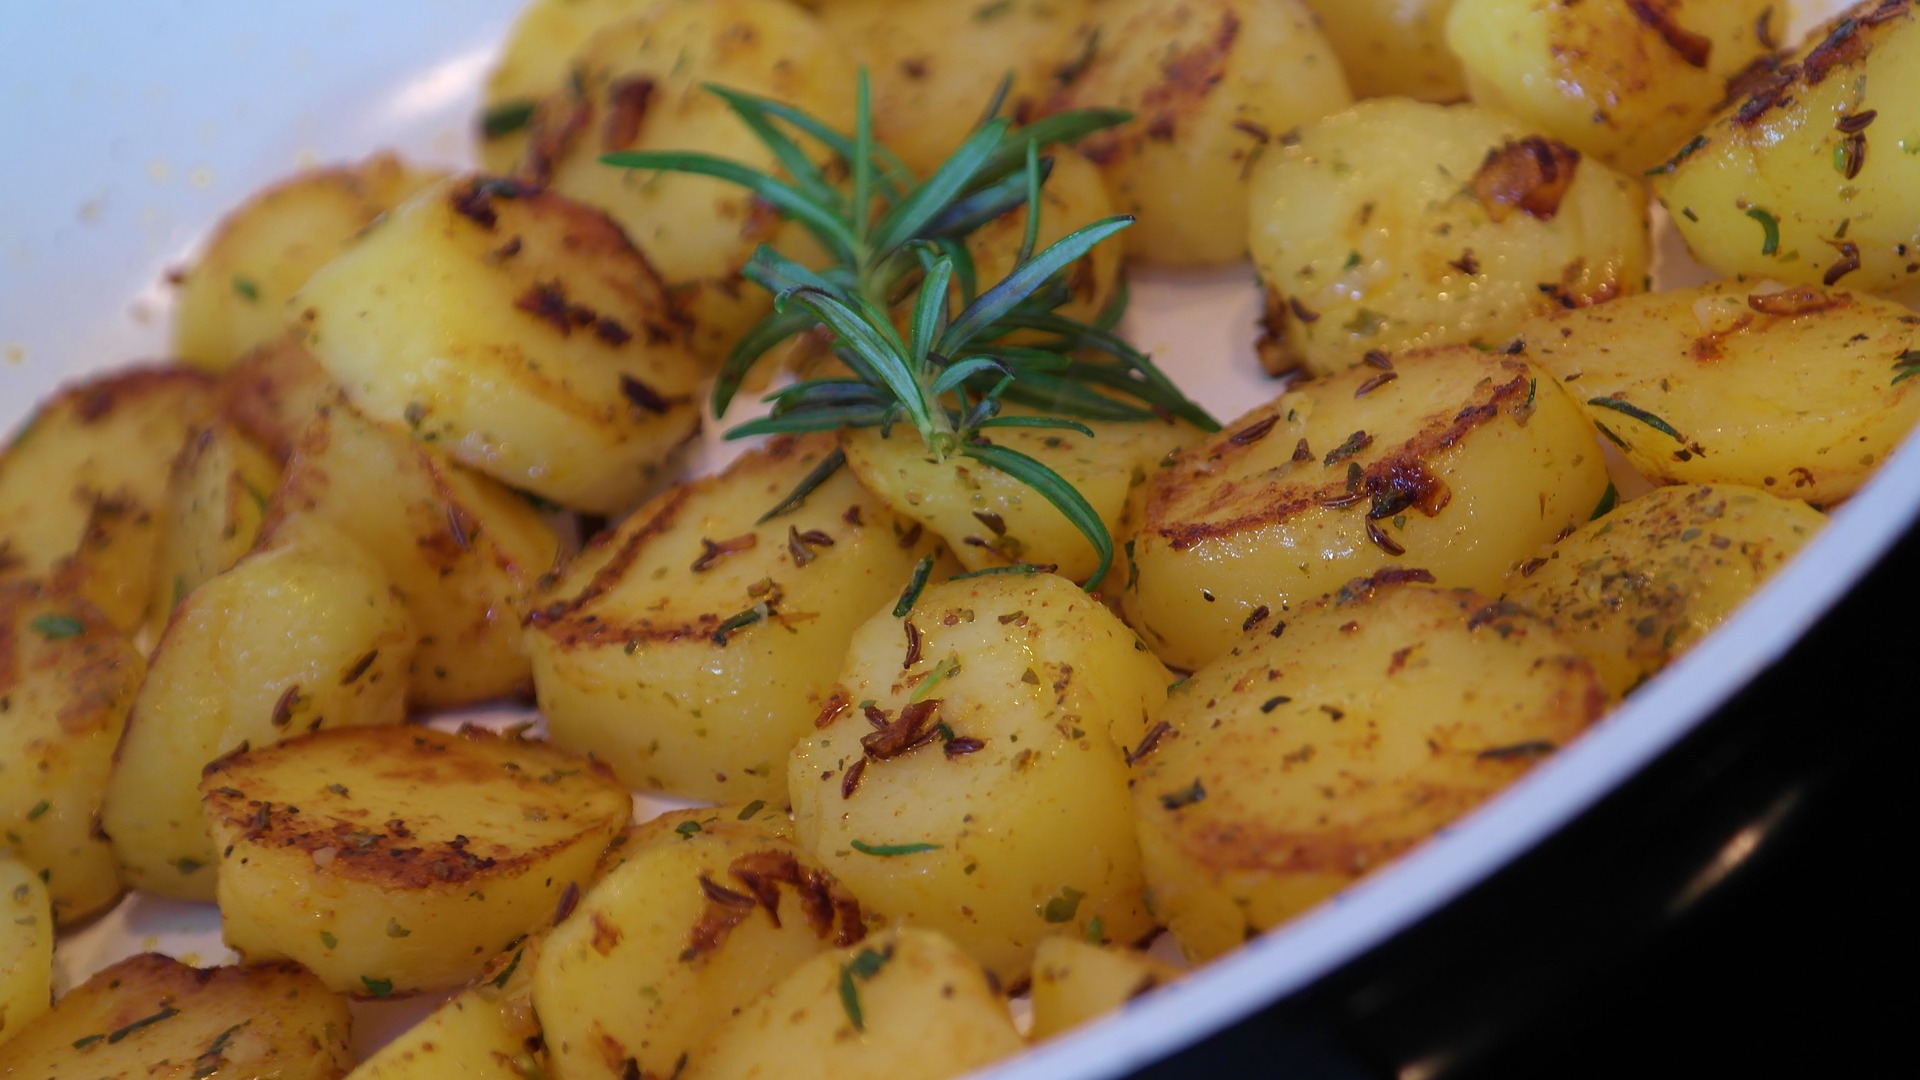 uploads/images/roasted potatoes